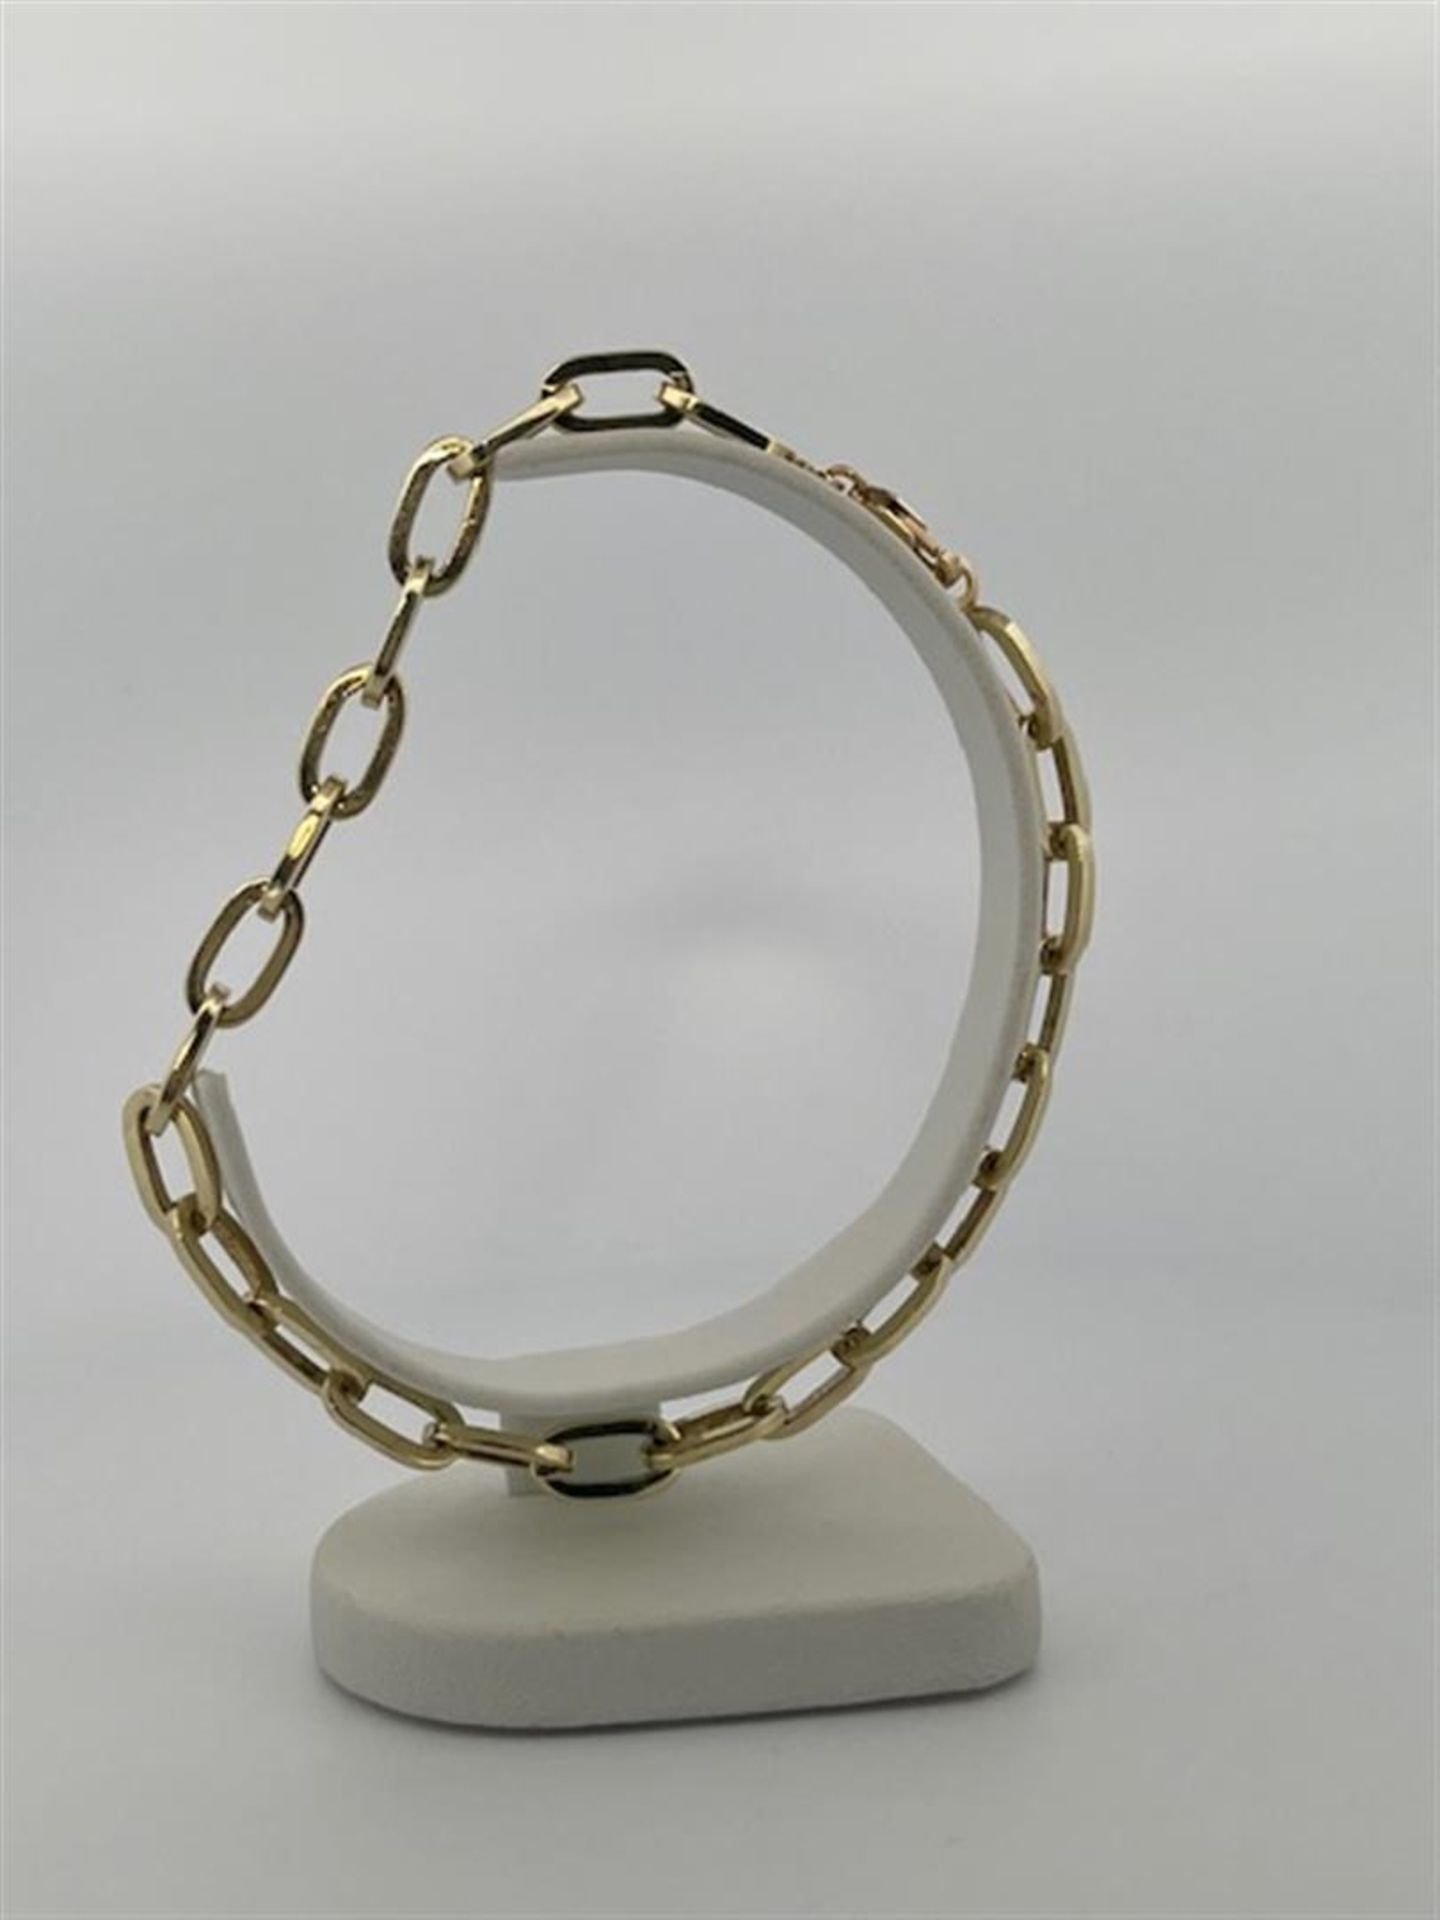 14kt yellow gold link bracelet.
Sturdy link bracelet. Nice to hang charms on!
Bracelet length: 21cm. - Bild 2 aus 5